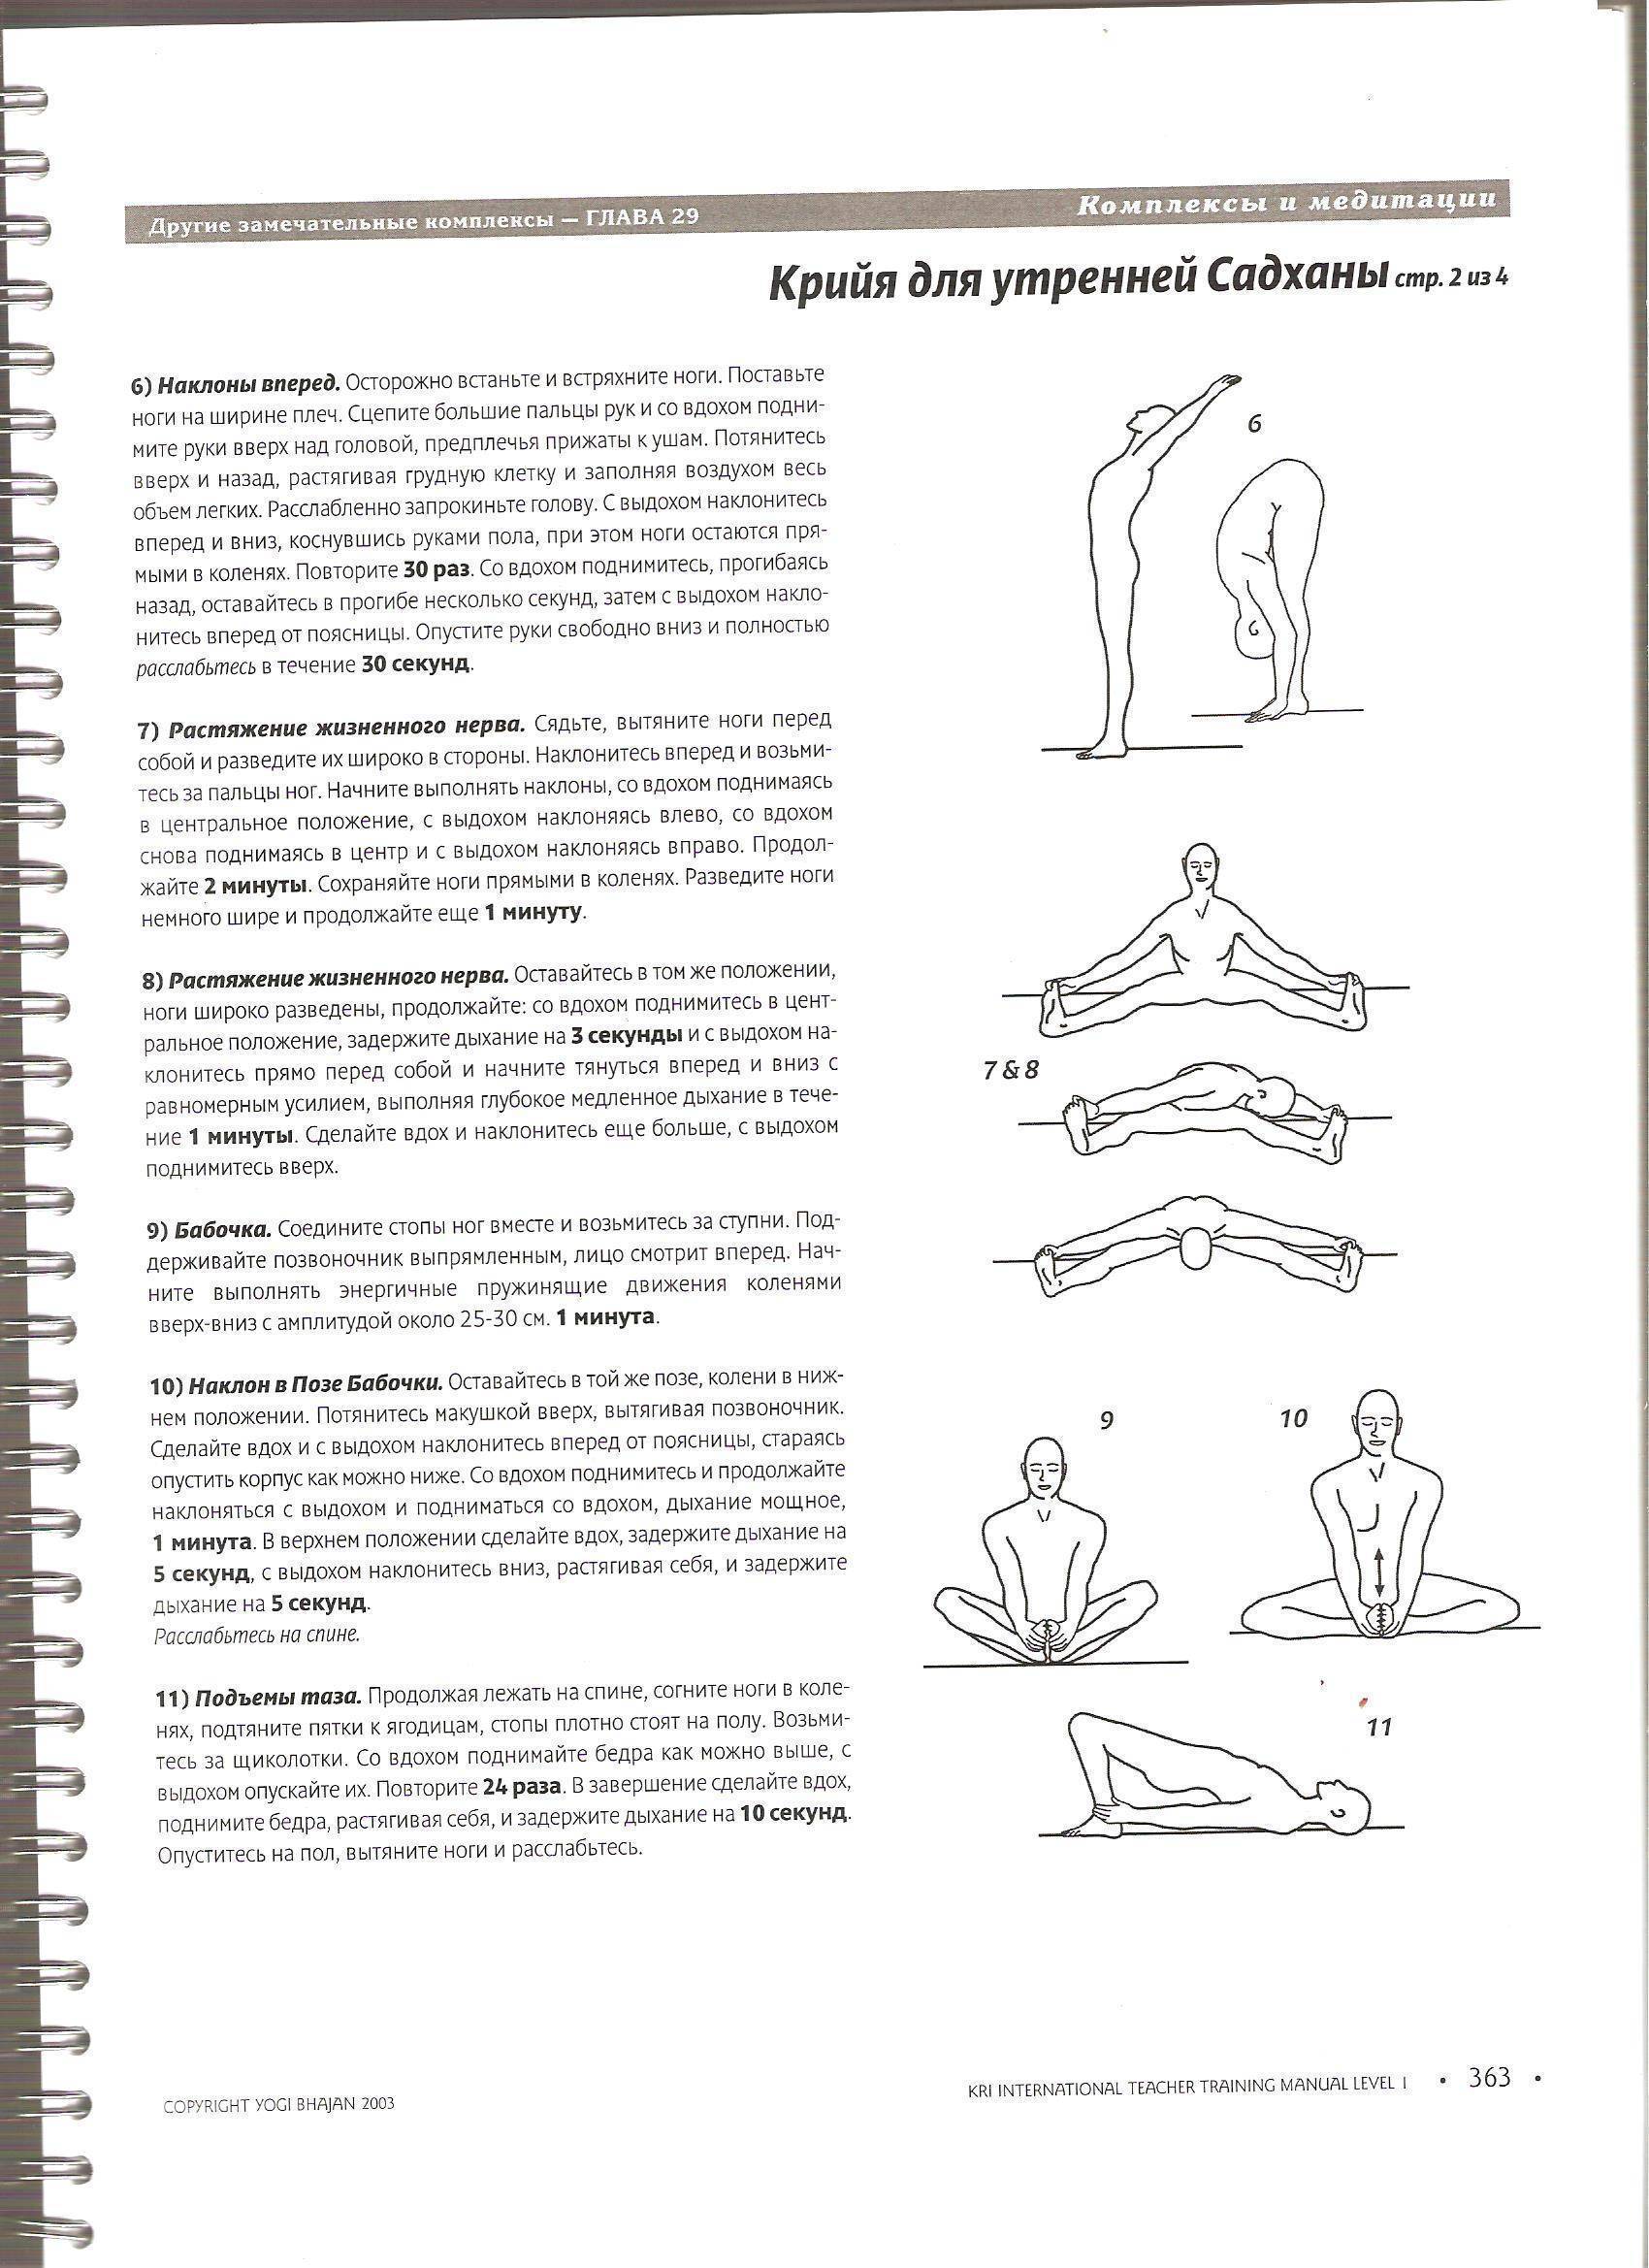 Тема 1 крийя-йога. введение. древние тантрические техники йоги и крийи. вводный курс